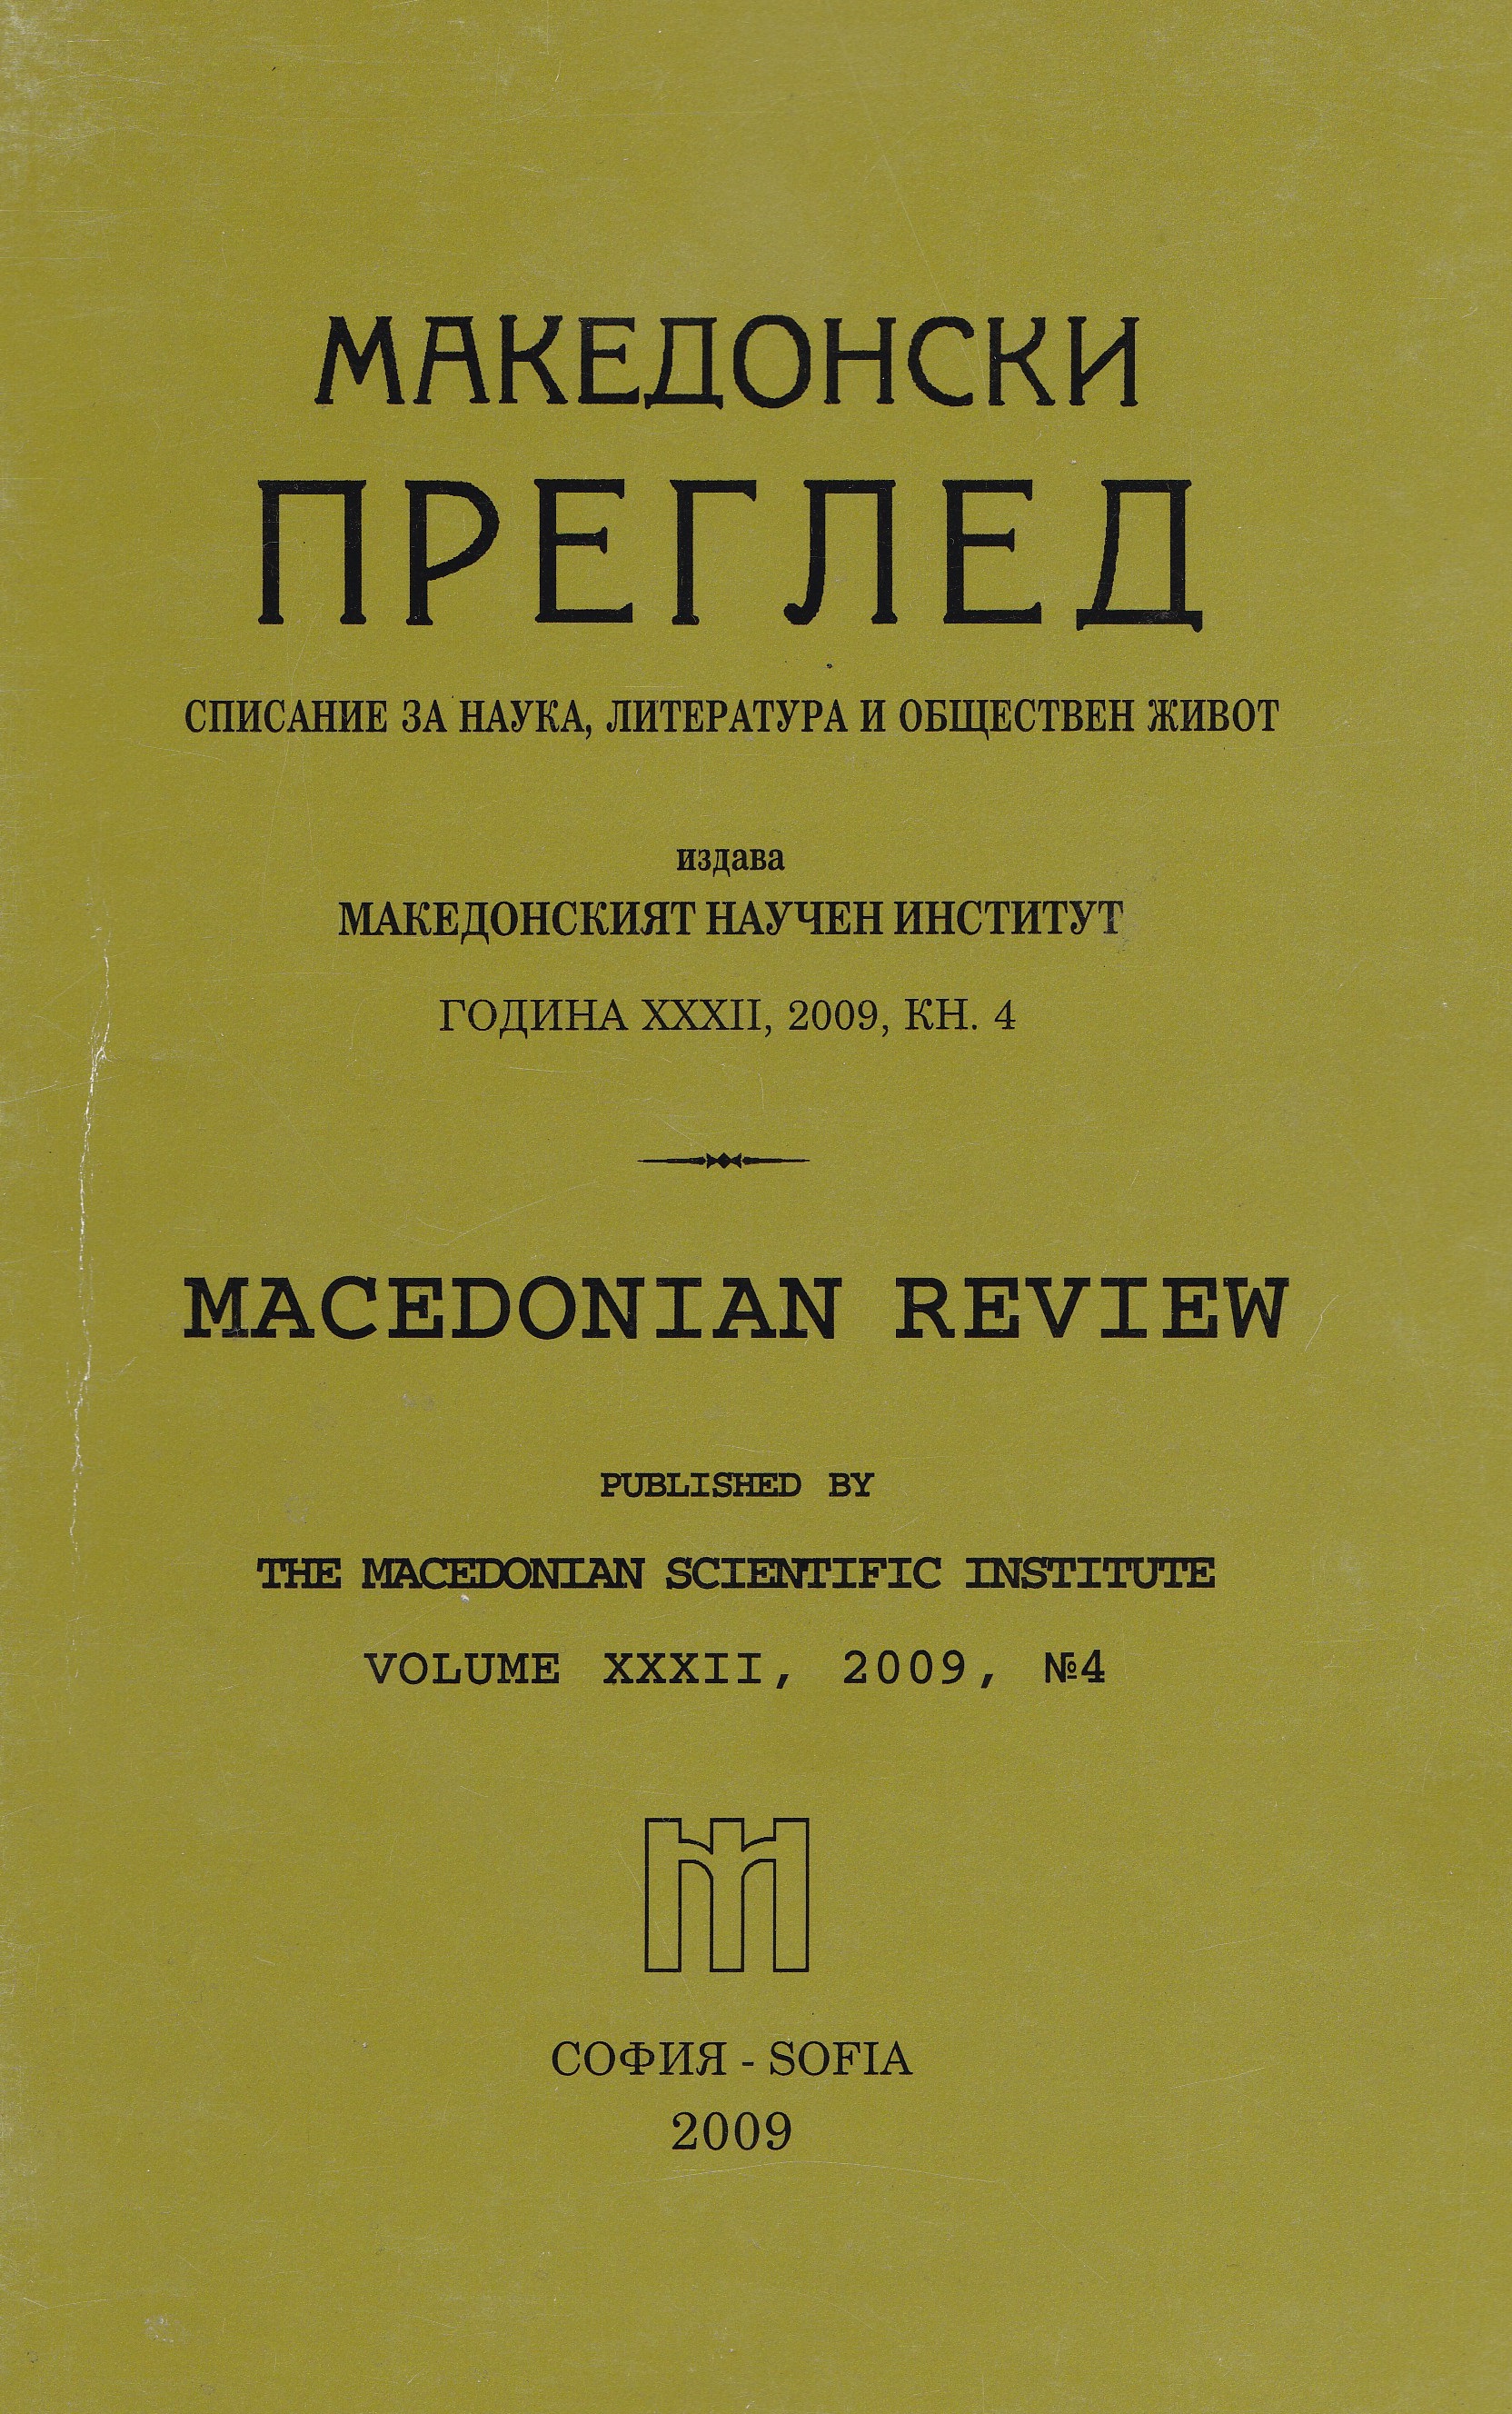 Финансирането на ВМОРО от българското правителство след Младотурската революция (1908-1909)